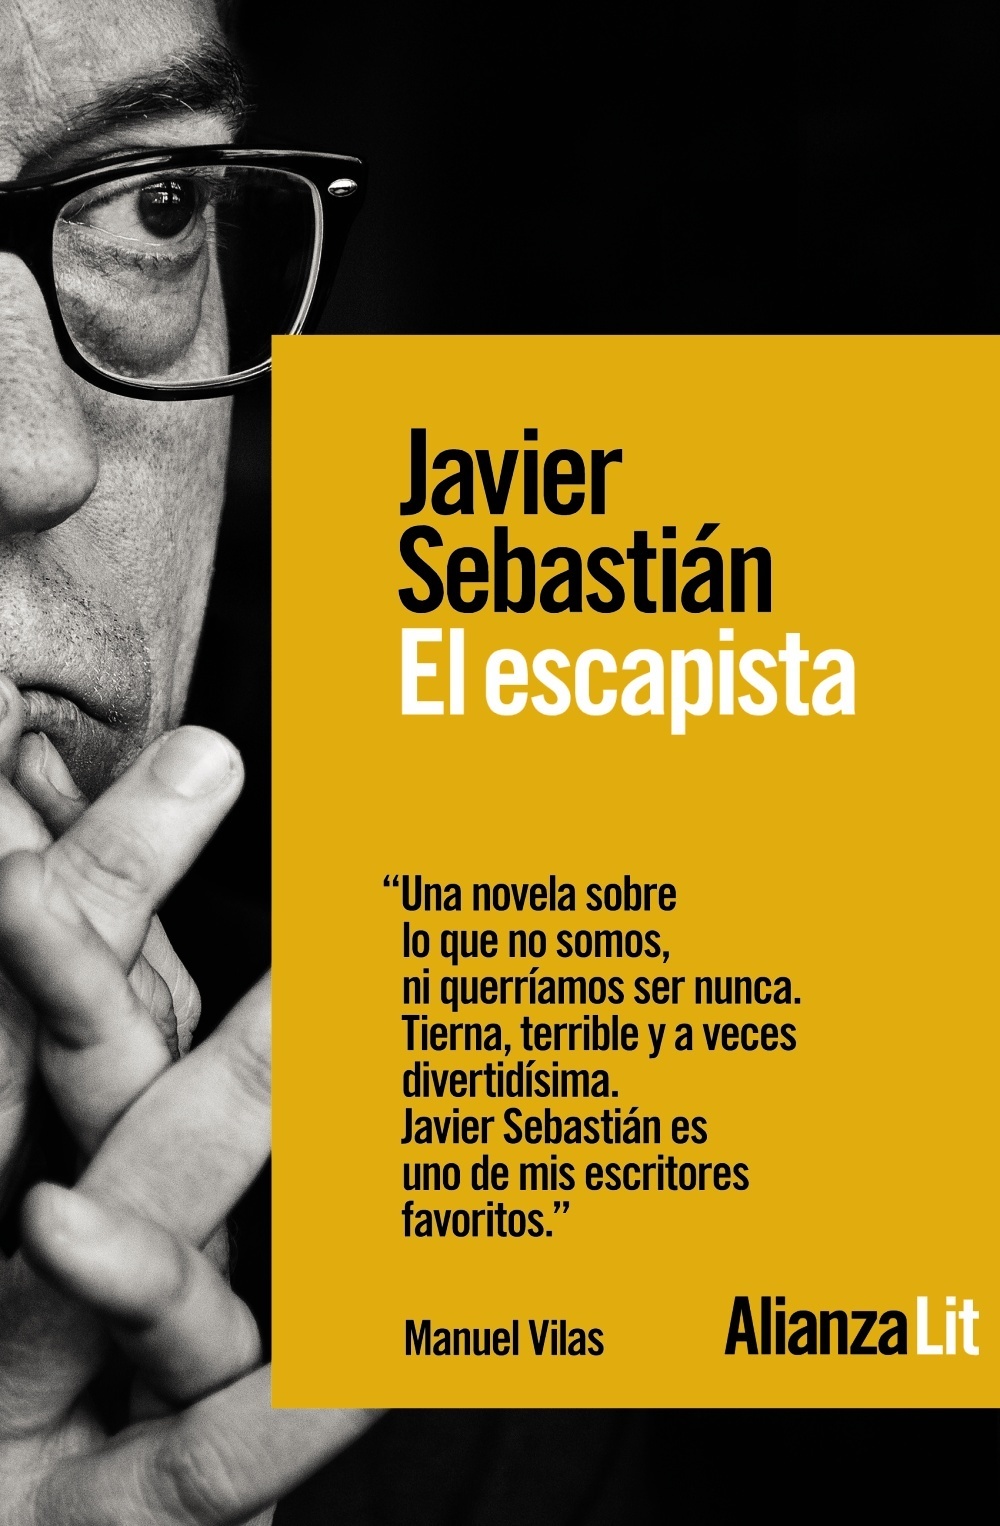 Javier Sebastián presenta "El escapista"